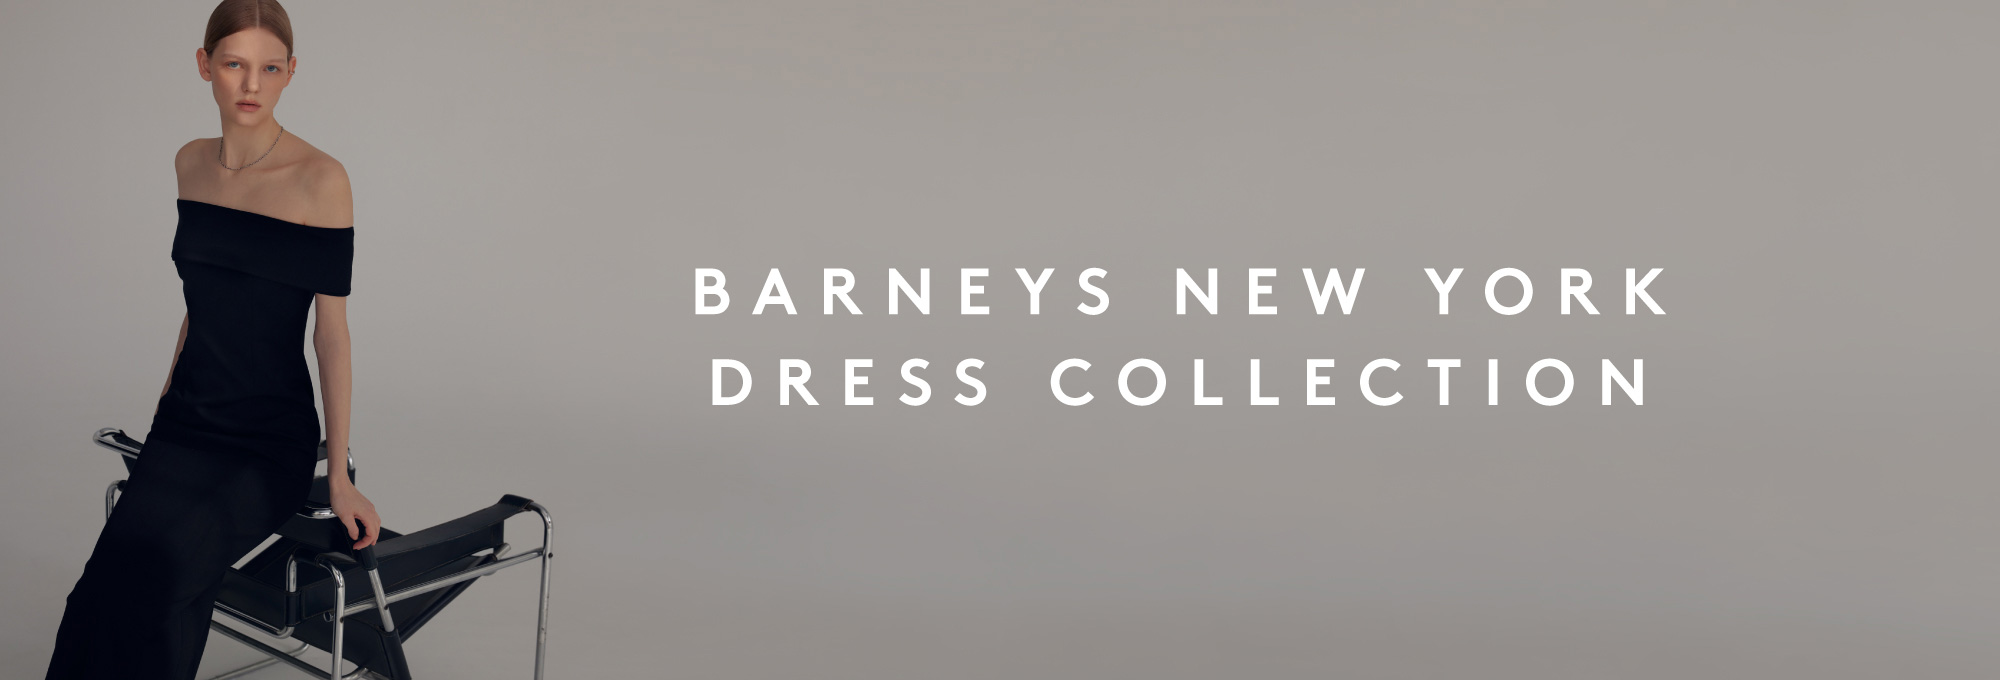 BARNEYS NEW YORK DRESS COLLECTION